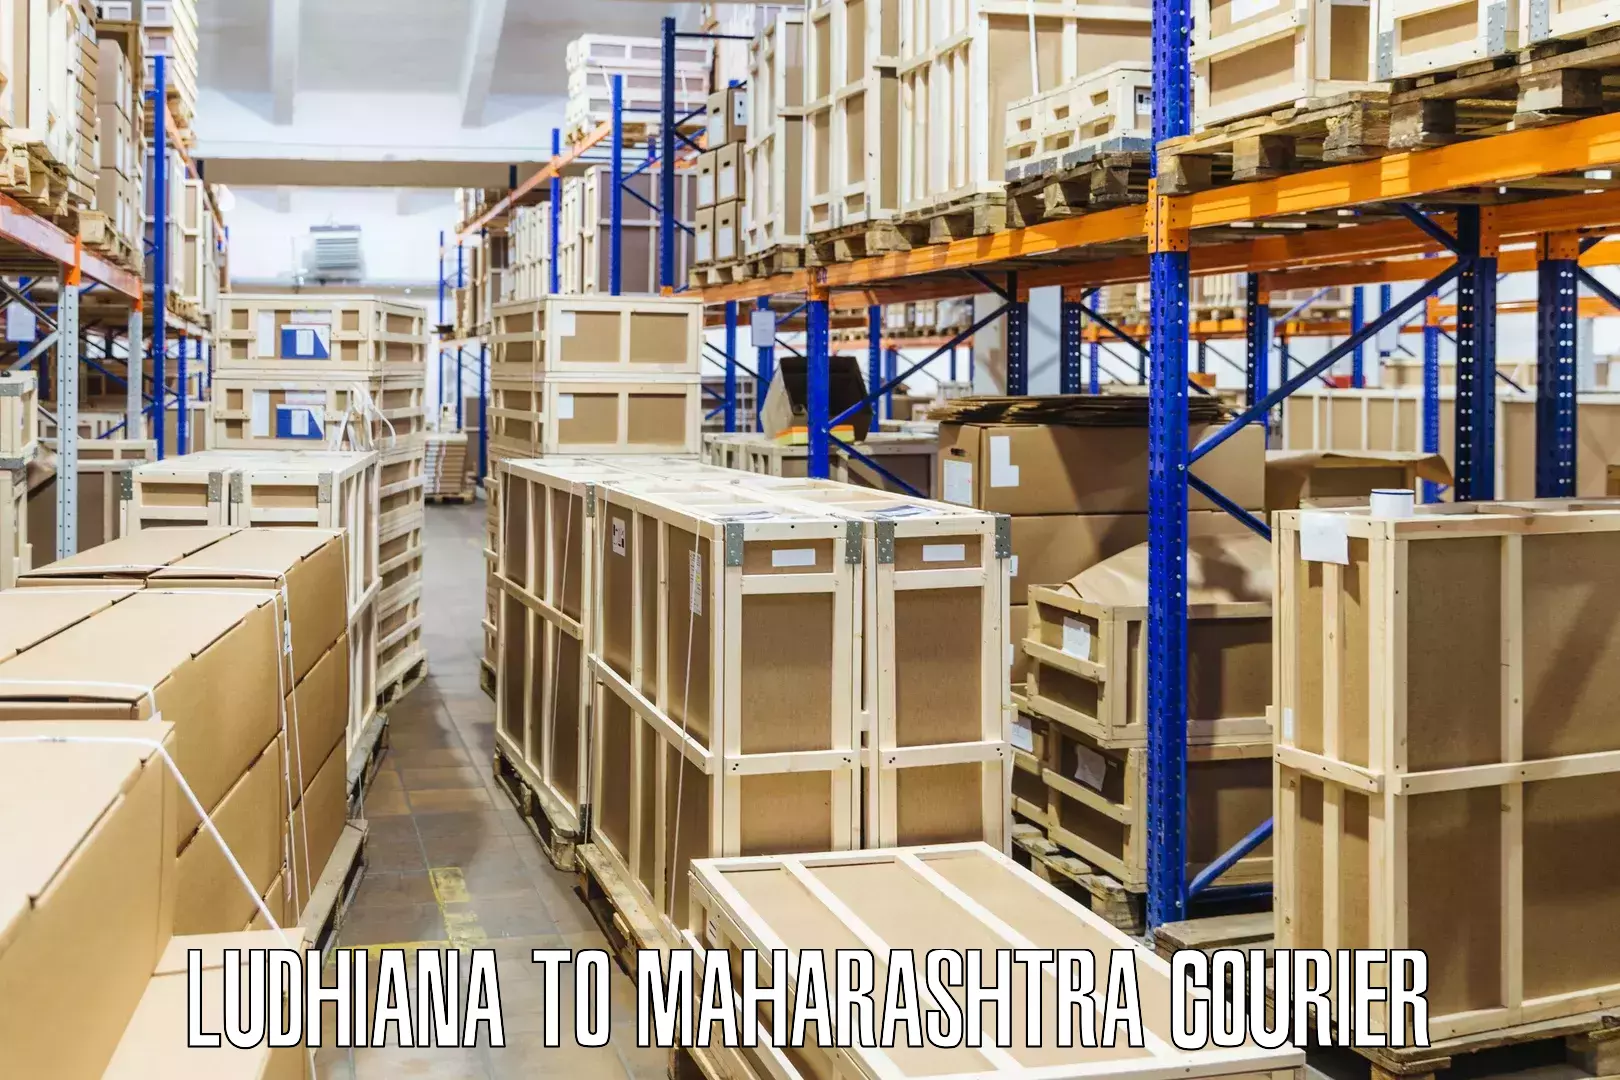 Courier service comparison Ludhiana to Gondpipri